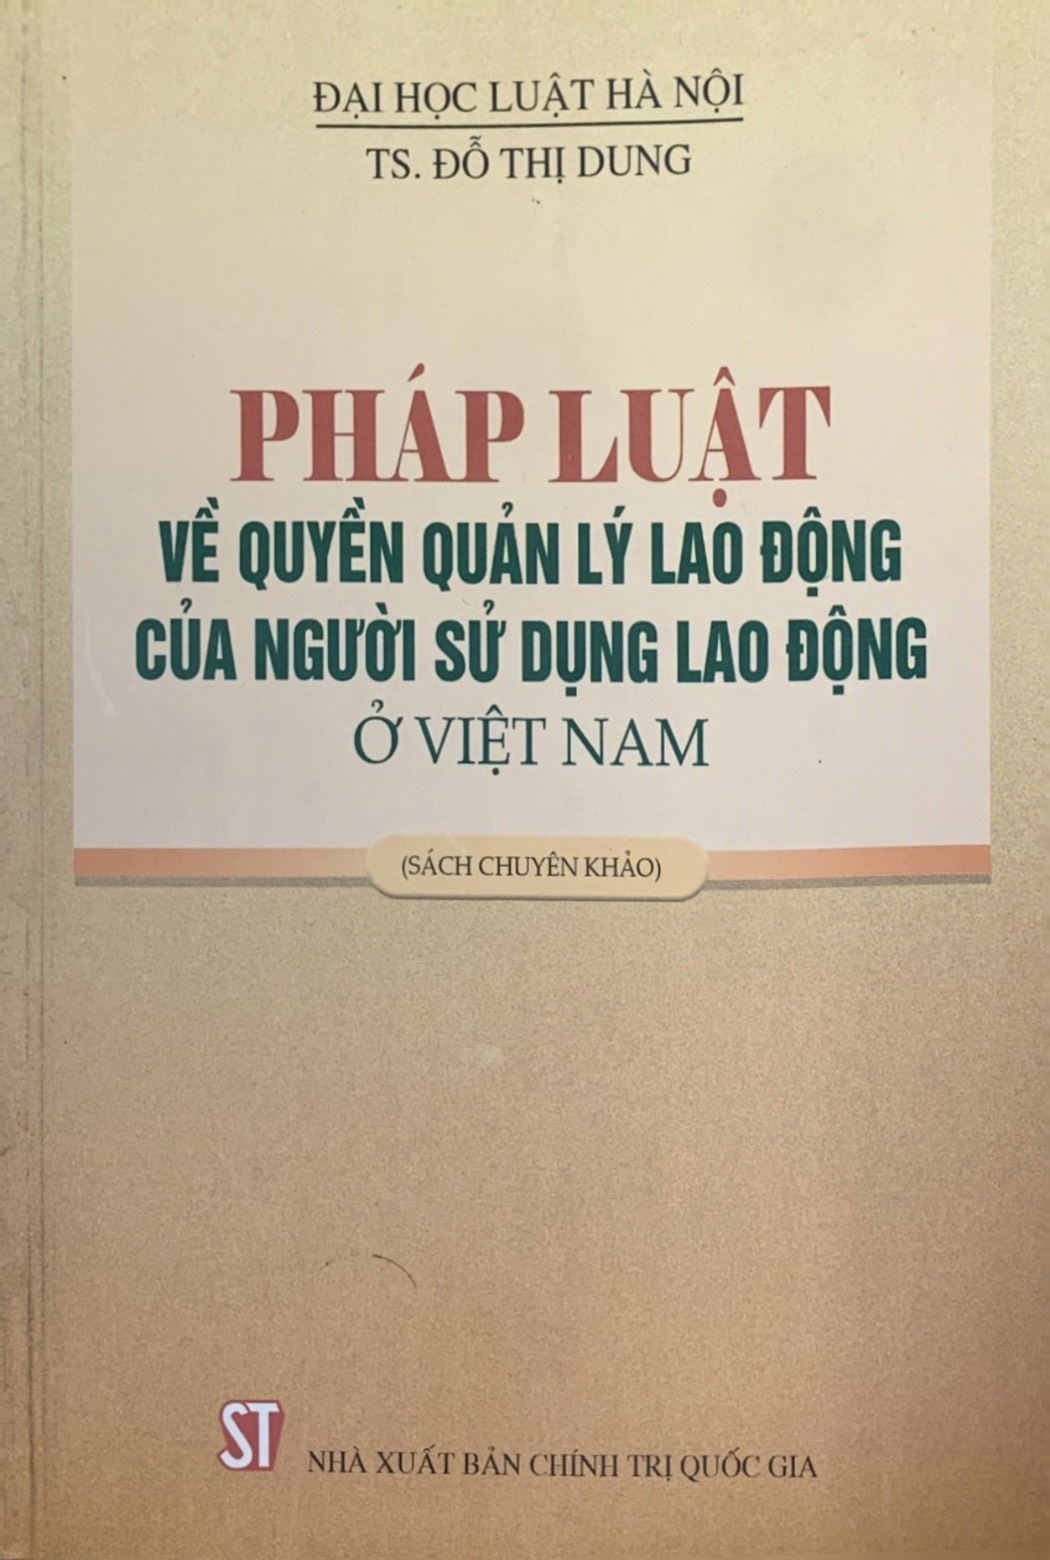 Pháp luật về quyền quản lý lao động của người sử dụng lao động ở Việt Nam (Sách chuyên khảo)